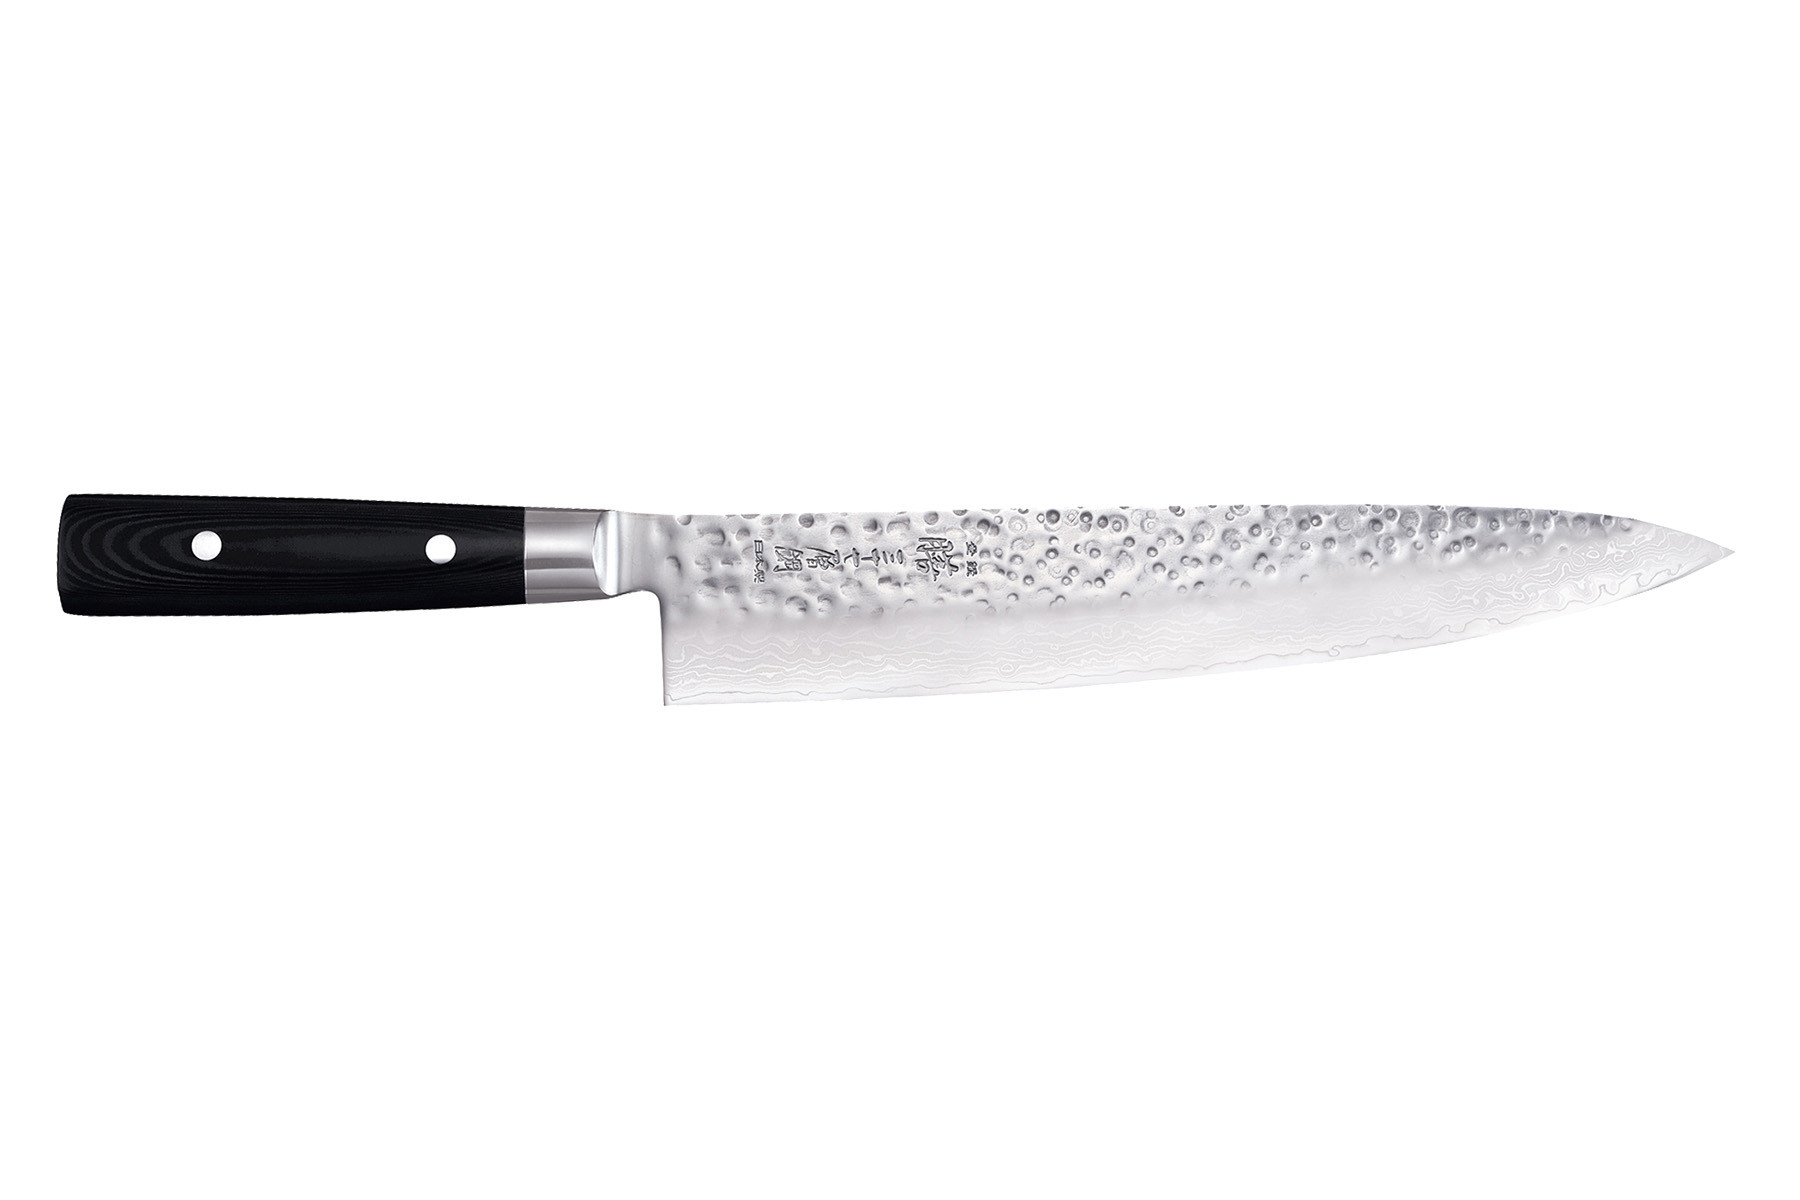 Couteau japonais Yaxell Zen - Couteau de chef 25,5 cm